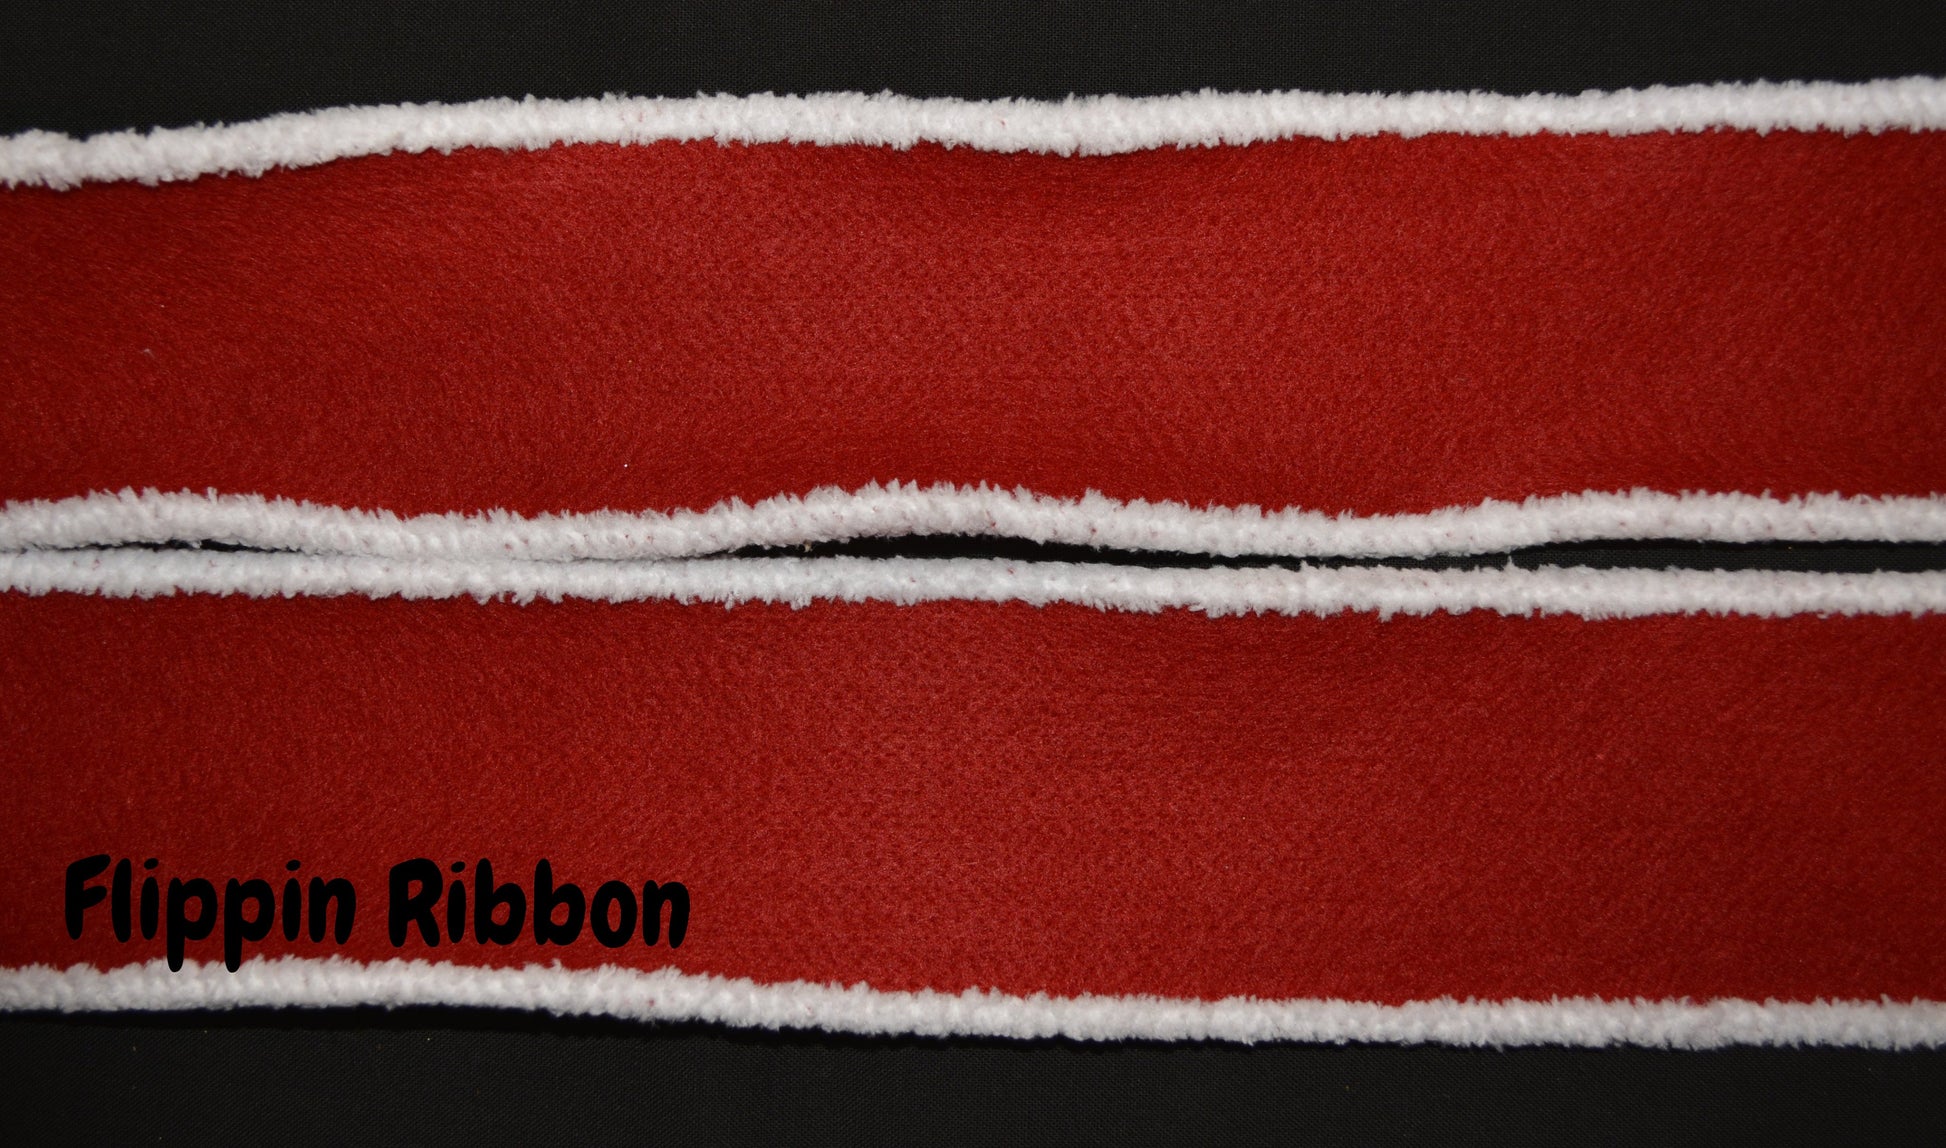 Wired Santa Ribbon - Flippin Ribbon